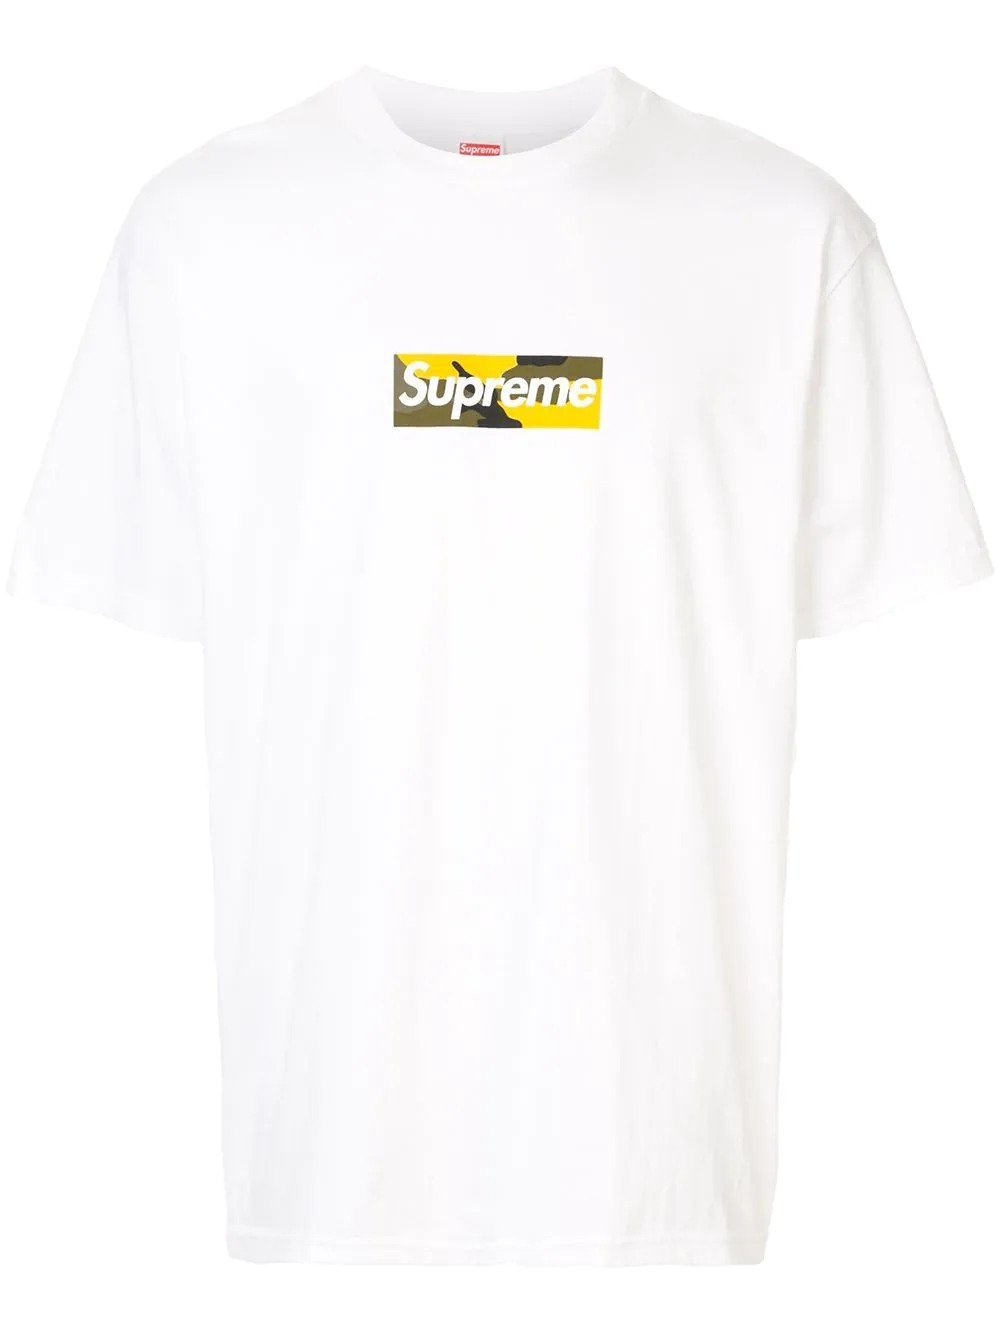 LV x Supreme Box Logo Tee, Men's Fashion, Tops & Sets, Tshirts